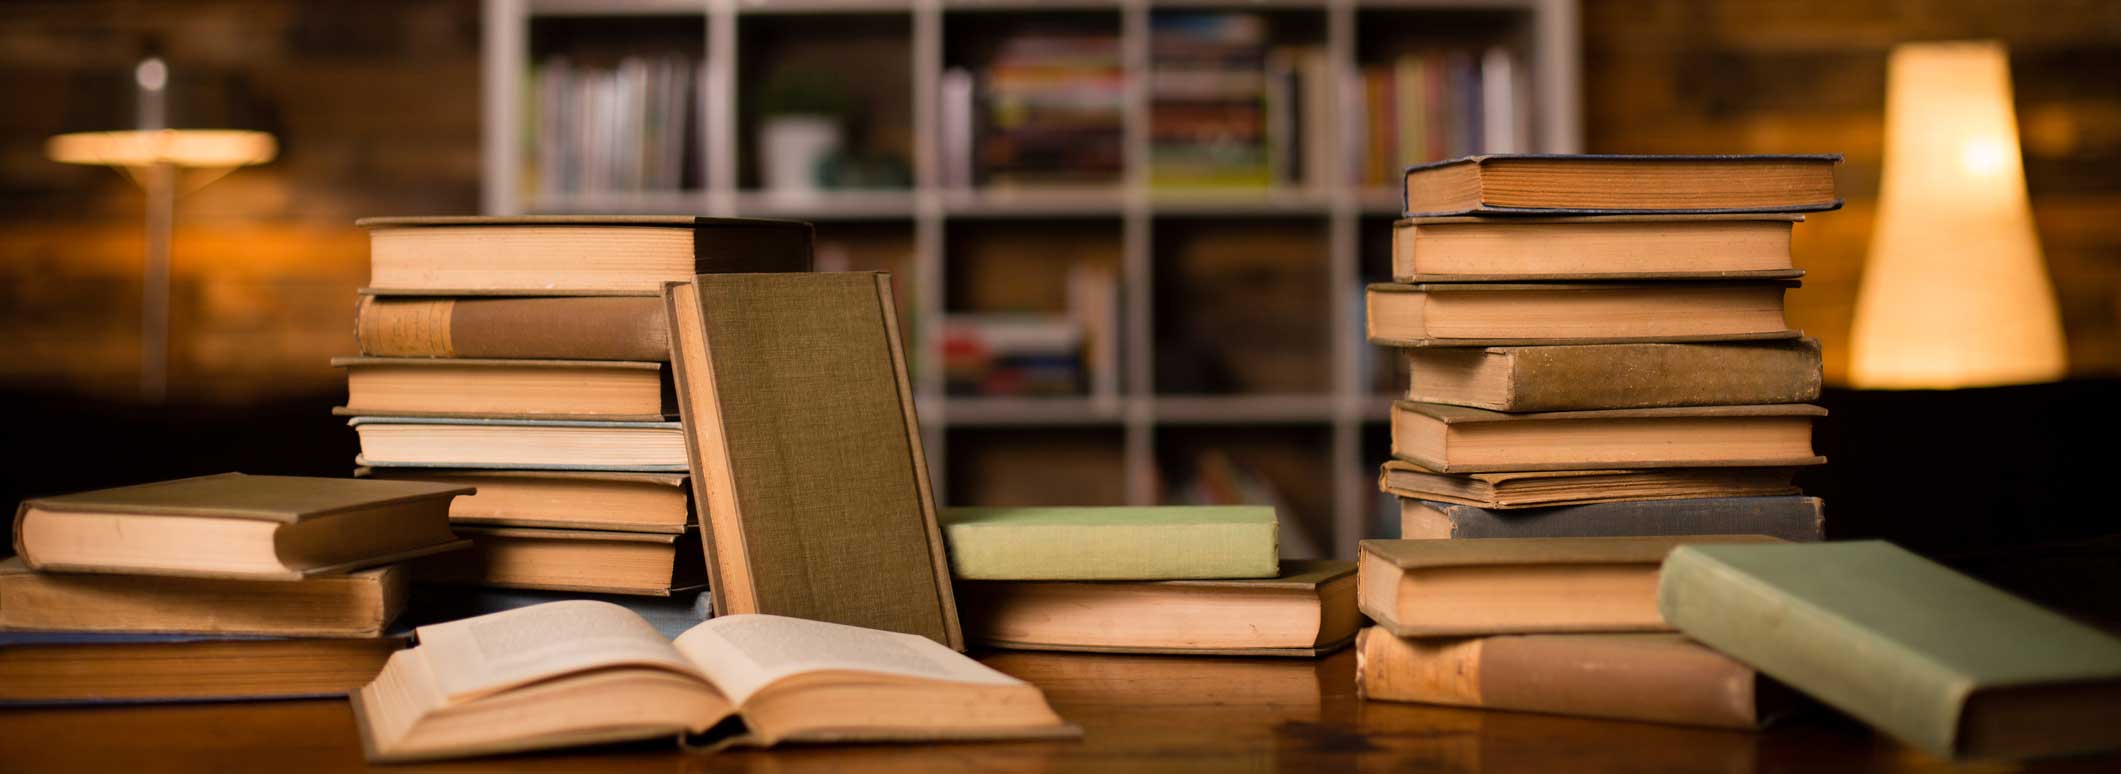 piles de livres sur une table en bois dans une bibliothèque